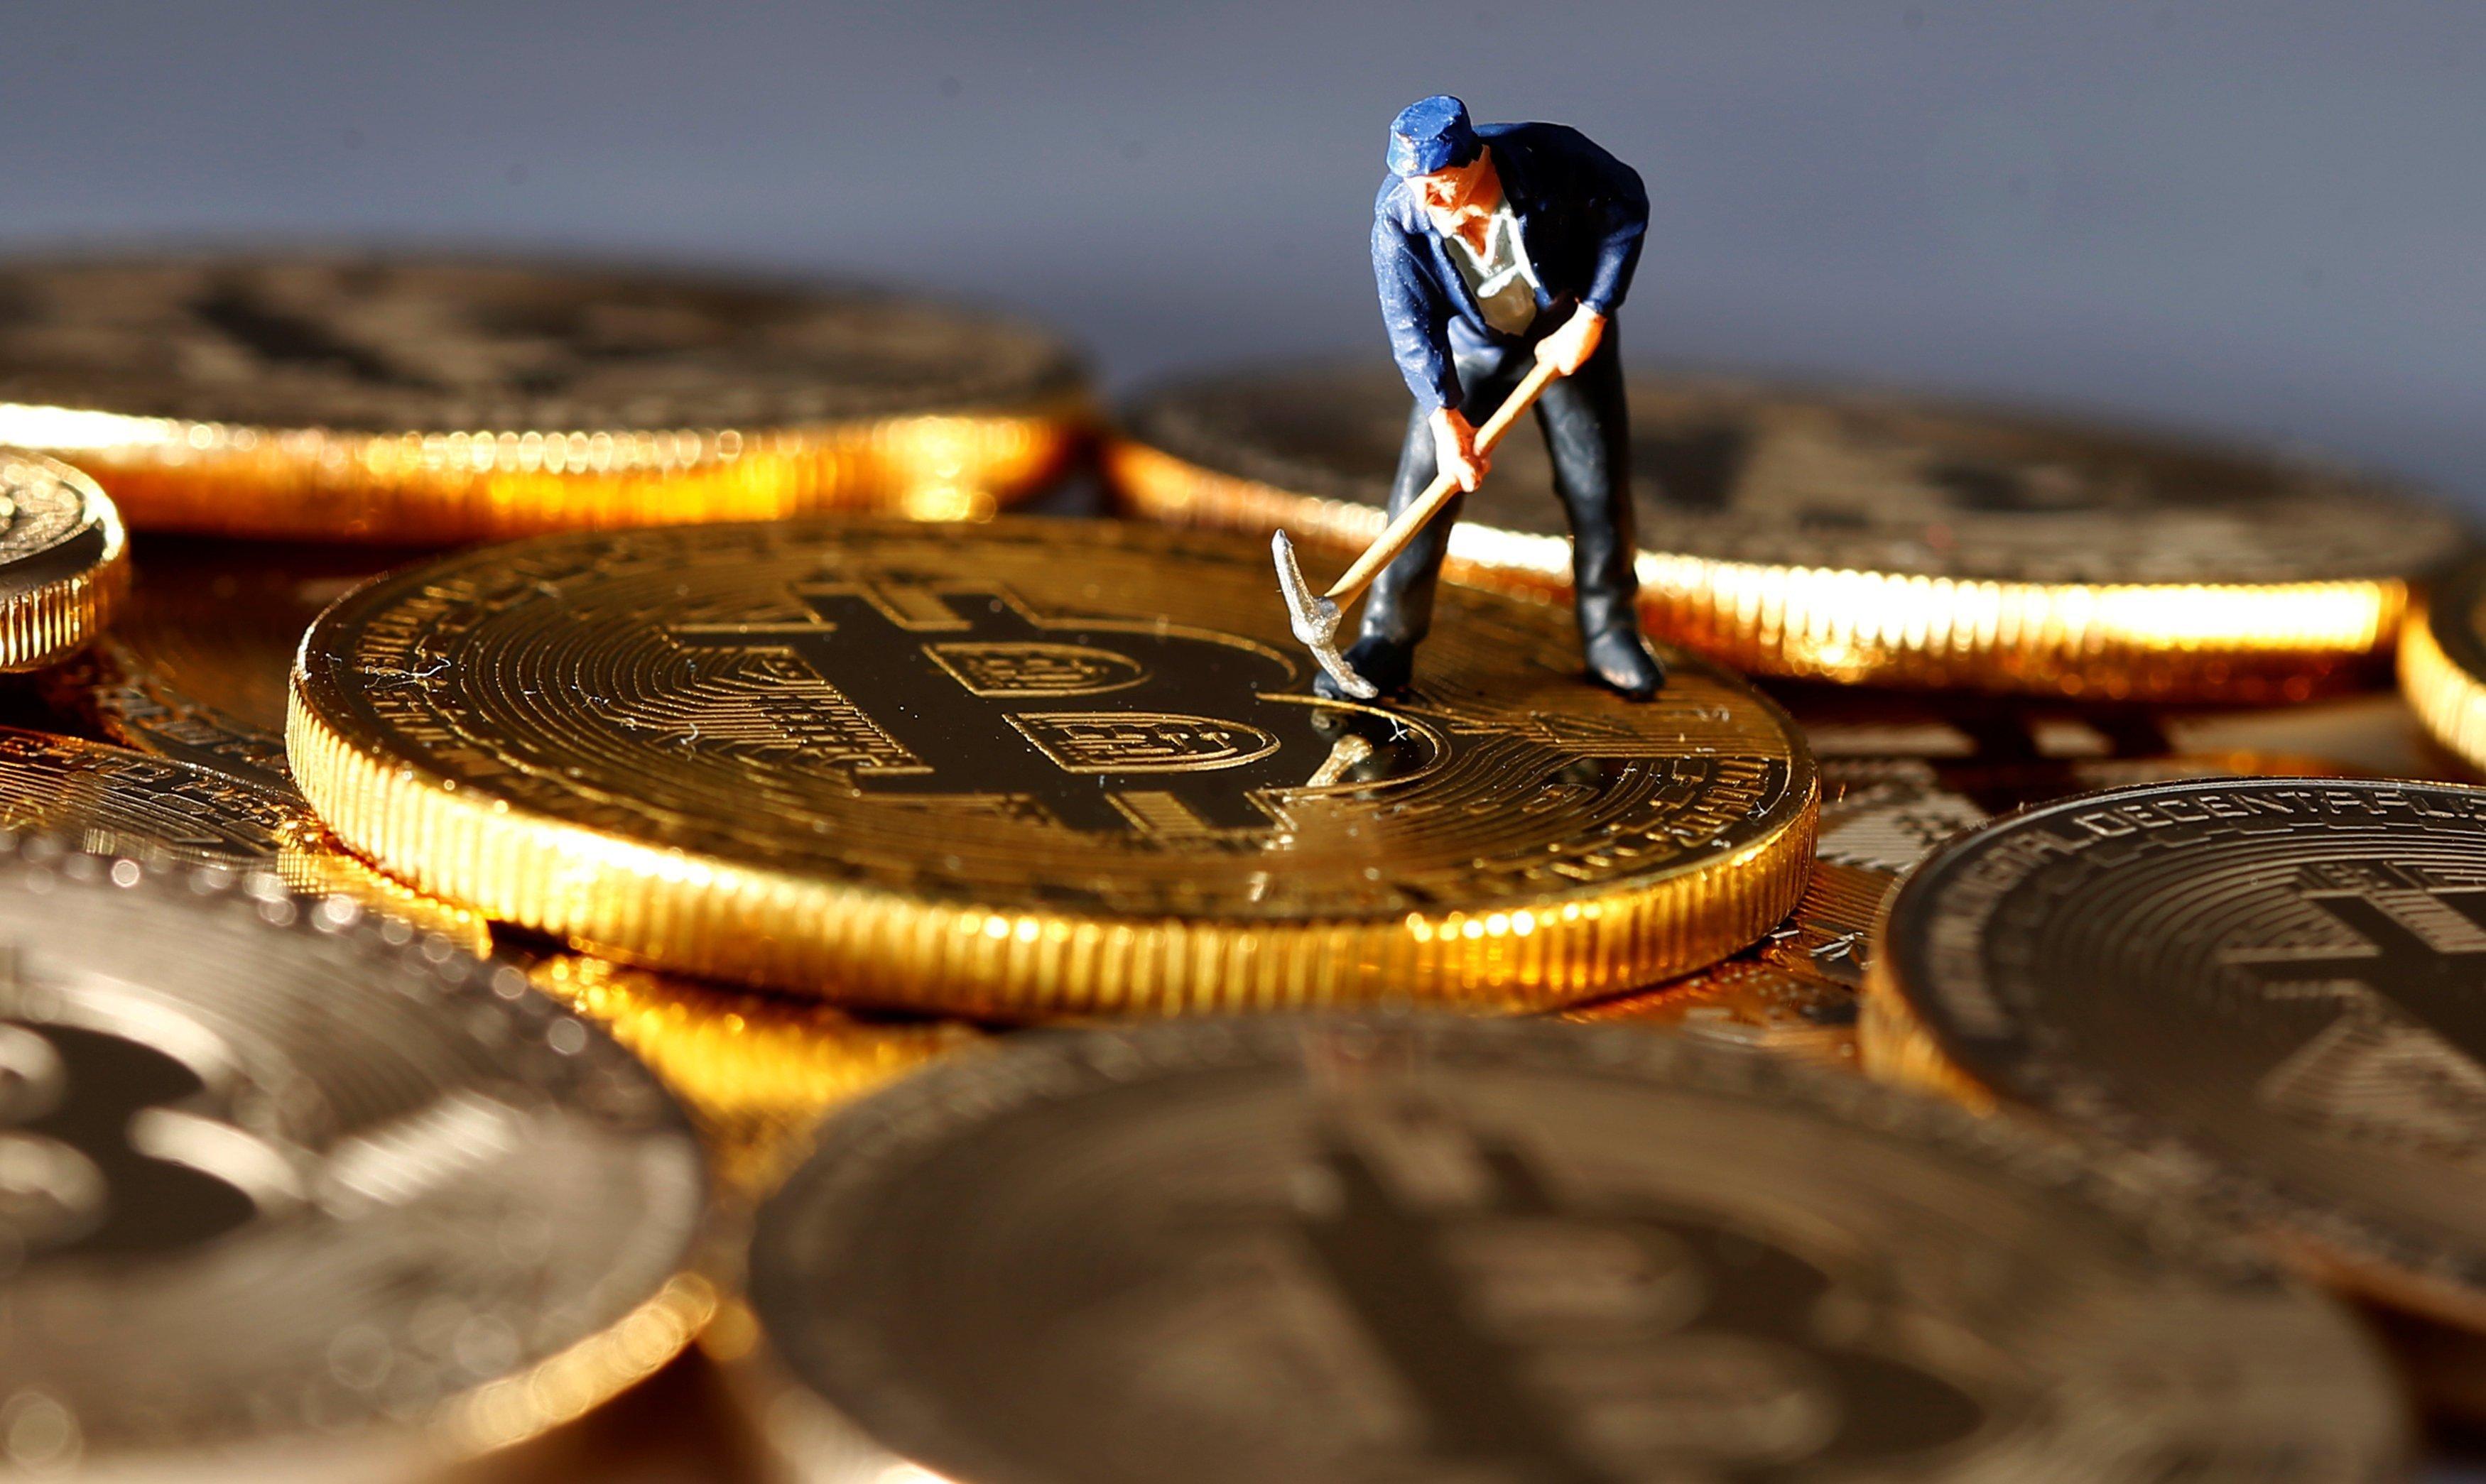 Yeni Başlayanlar İçin Bitcoin Madenciliği(Mining) Nedir? Nasıl Yapılır?